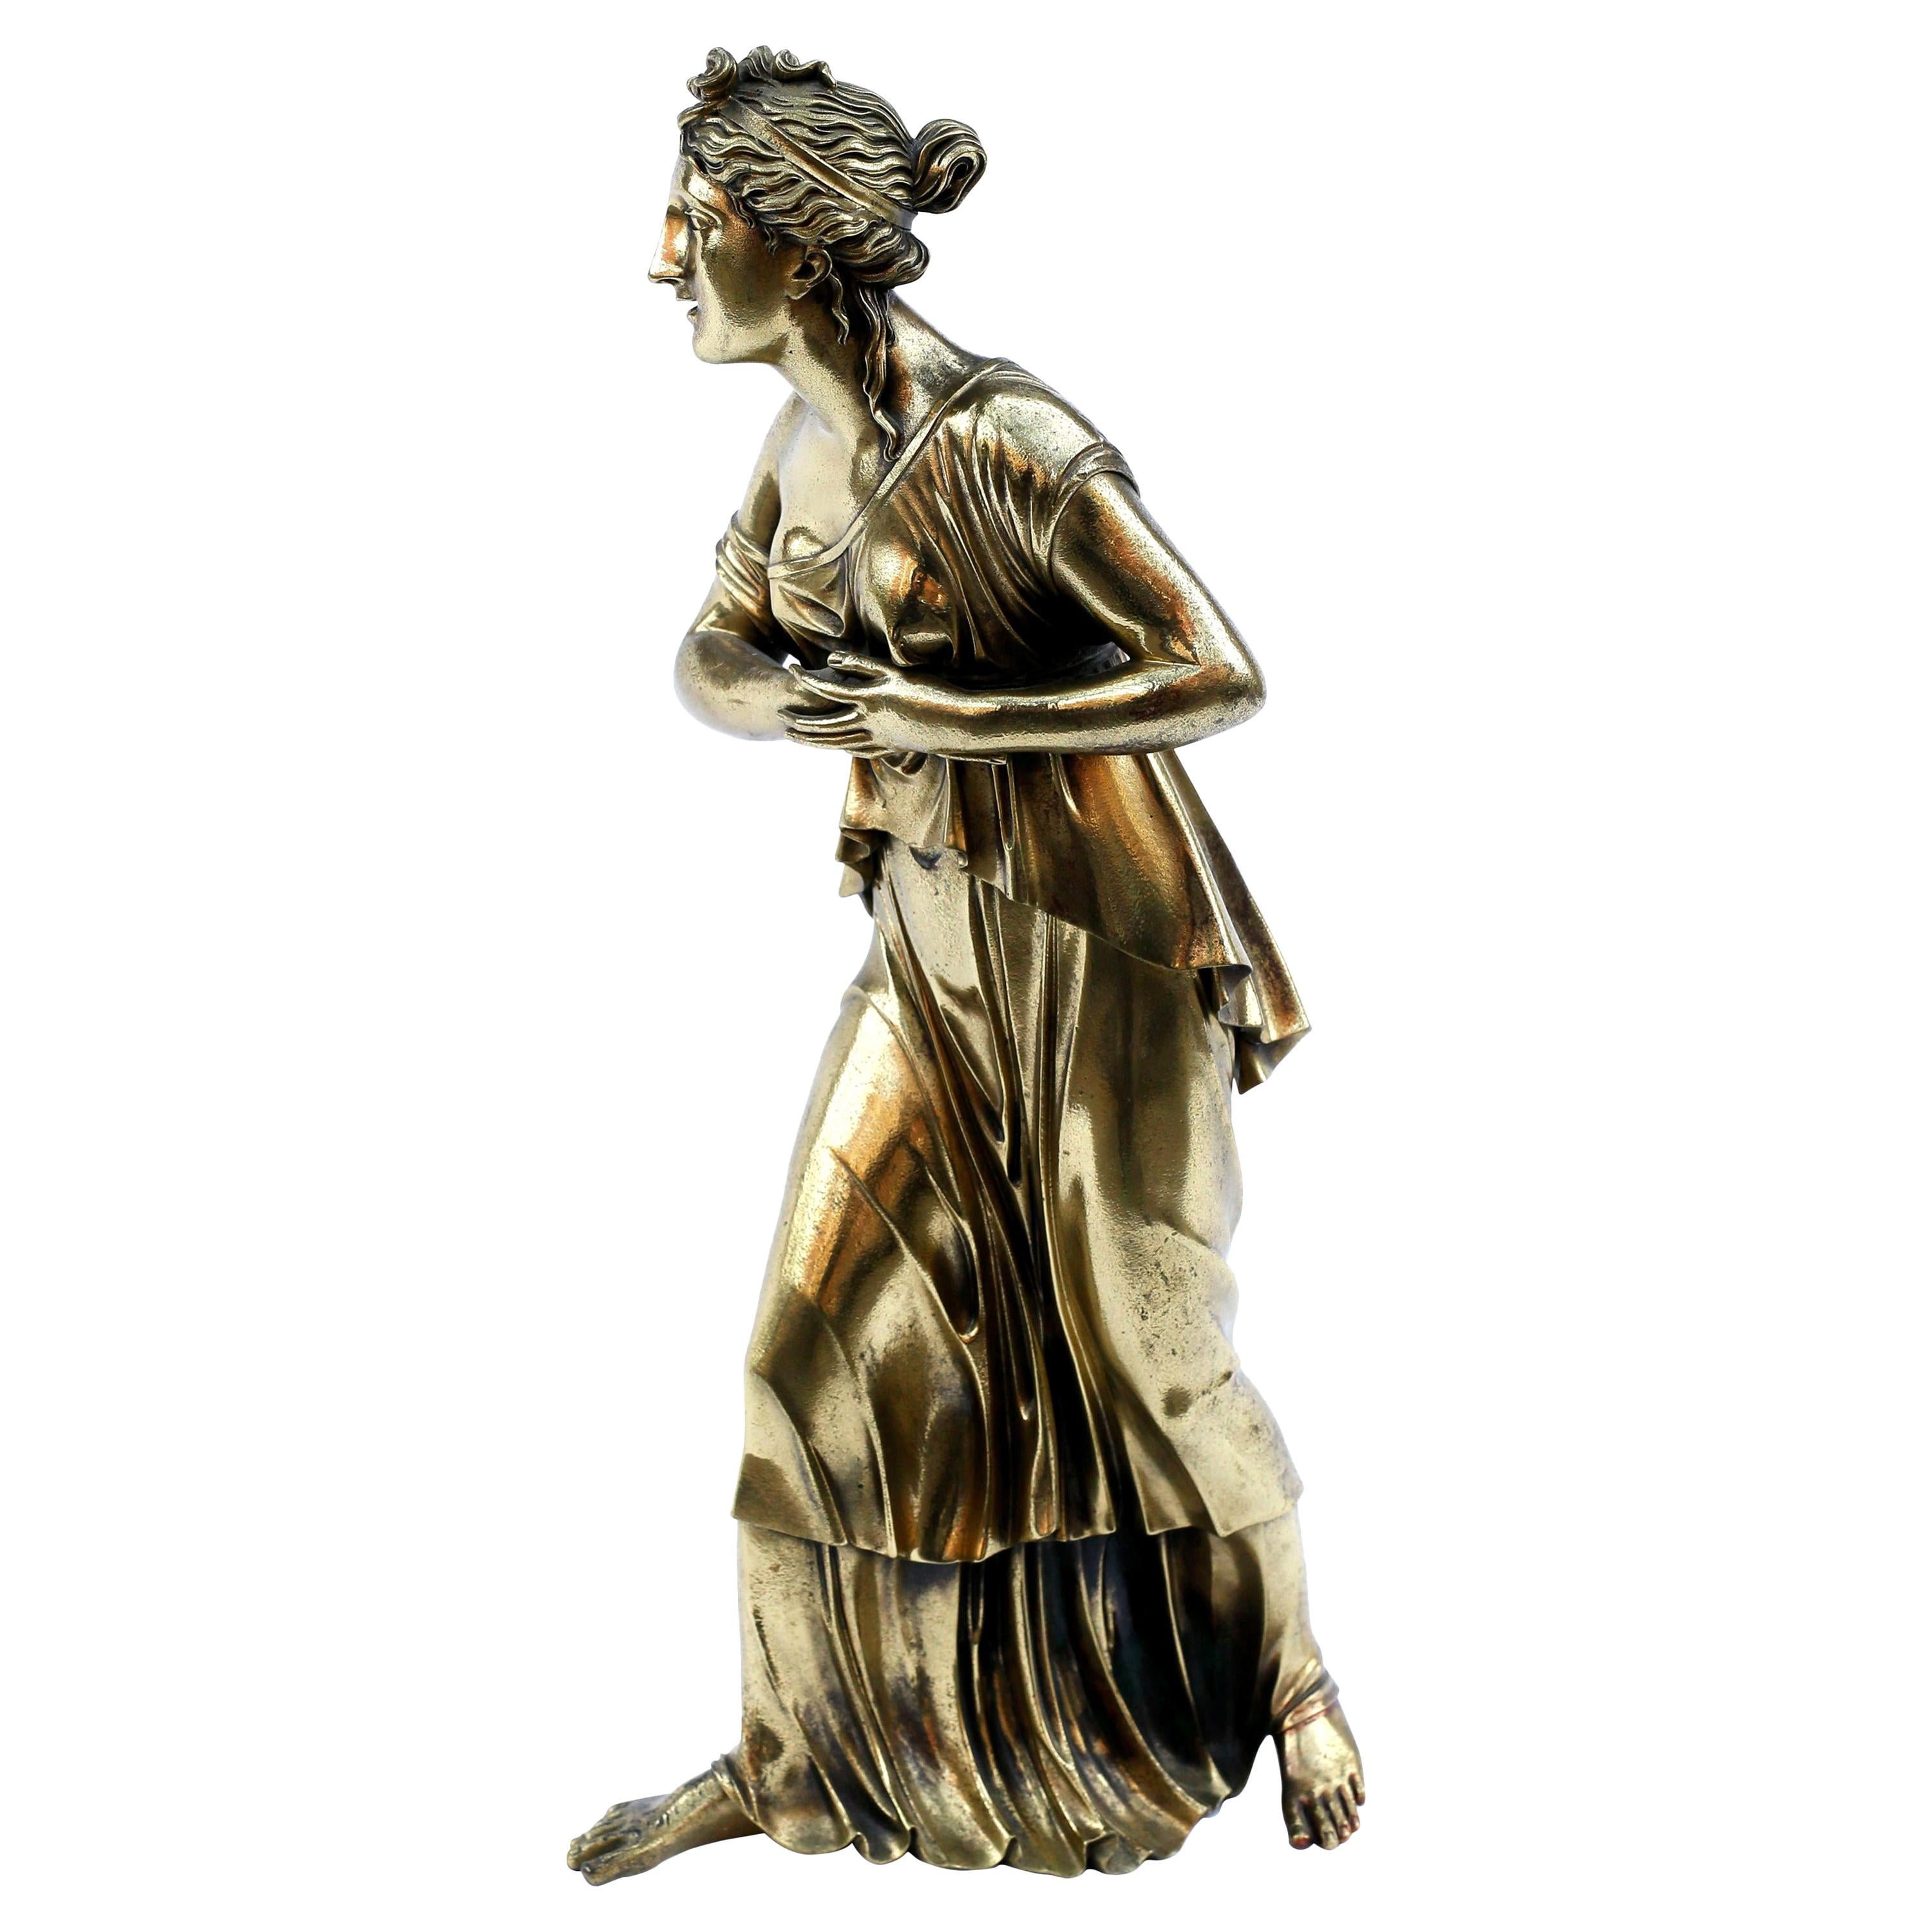 Neoklassische Bronze-Doré-Skulptur einer Frau aus dem 18. Jahrhundert